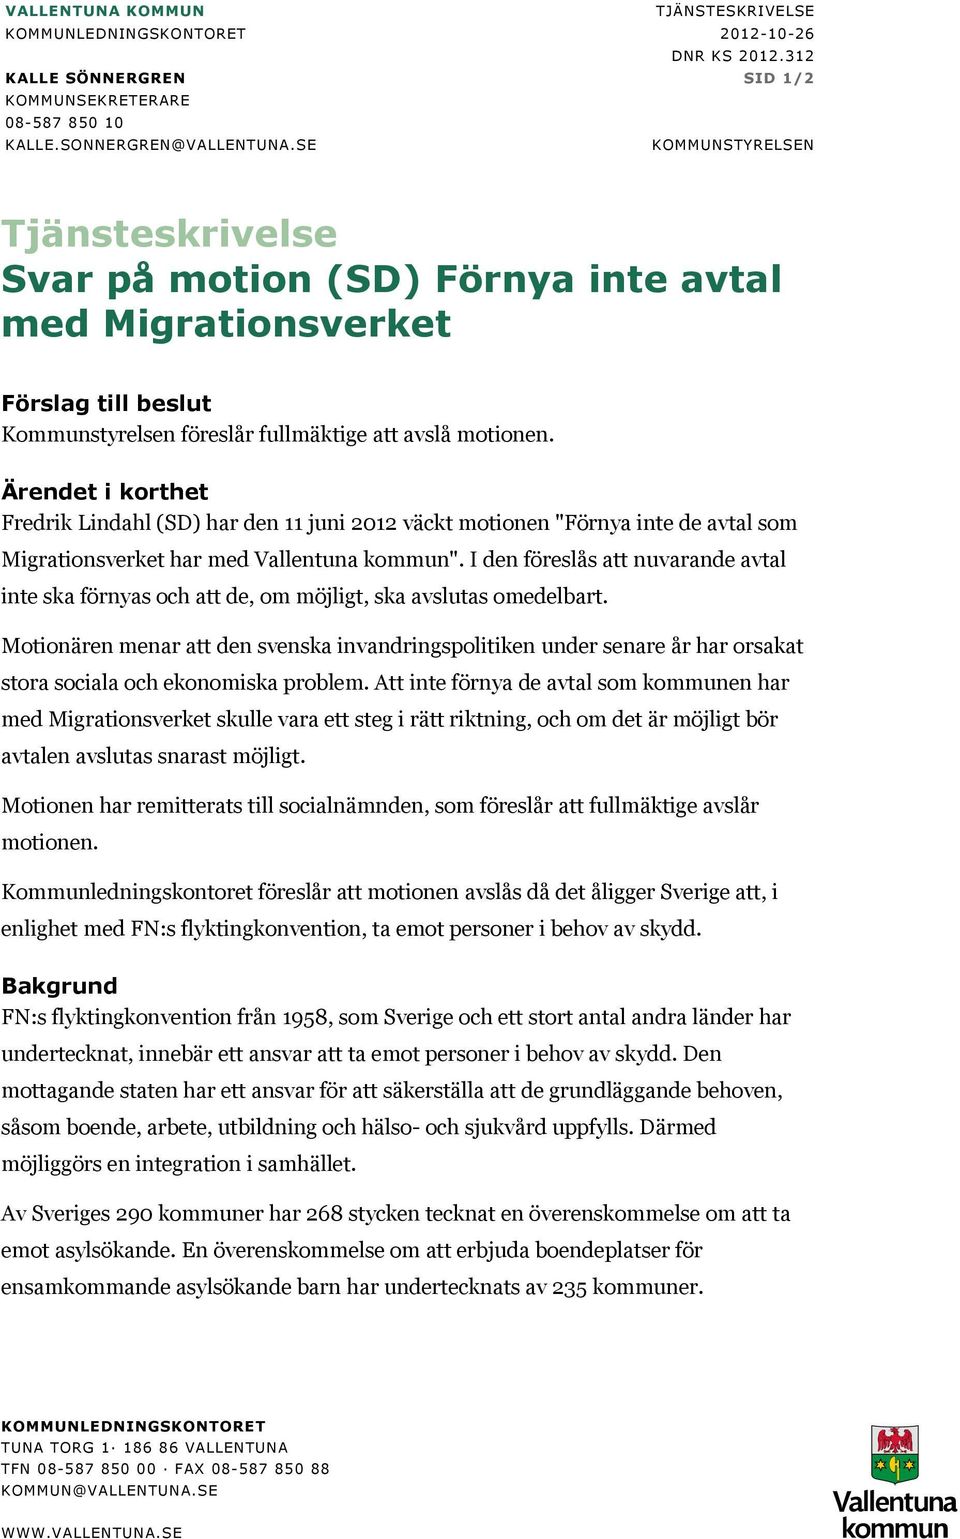 Fredrik Lindahl (SD) har den 11 juni 2012 väckt motionen "Förnya inte de avtal som Migrationsverket har med Vallentuna kommun".